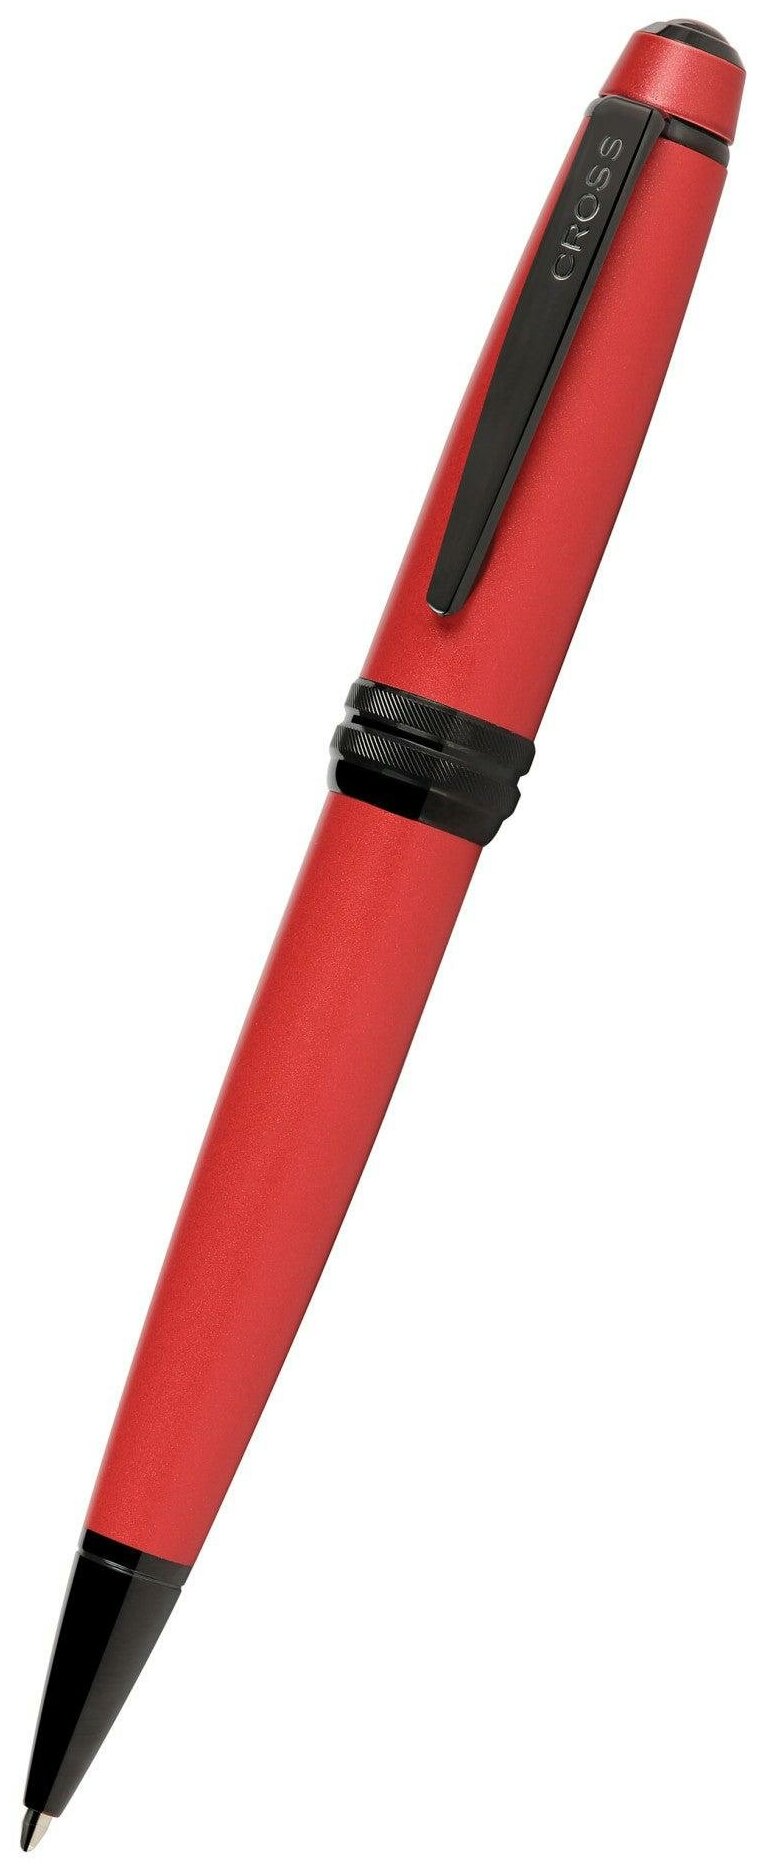 Шариковая ручка Cross Bailey Matte Red Lacquer. Цвет - красный.